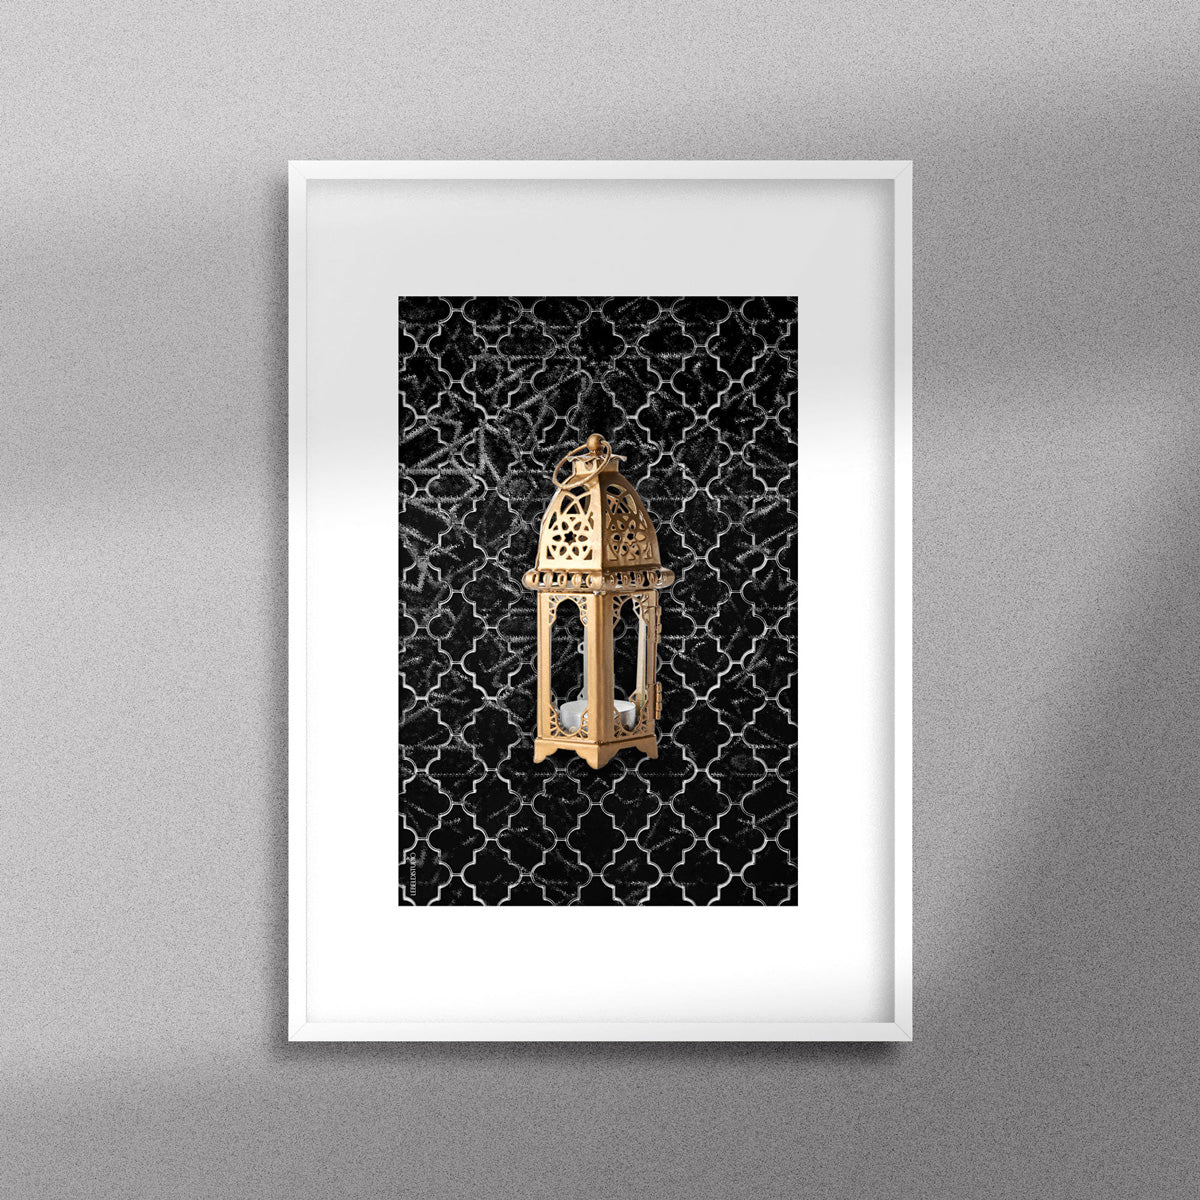 Tableau décoratif  d'une lanterne traditionnelle marocaine en dorée sur un fond de zellige marocain noir, encadré dans un cadre blanc - Format A3.